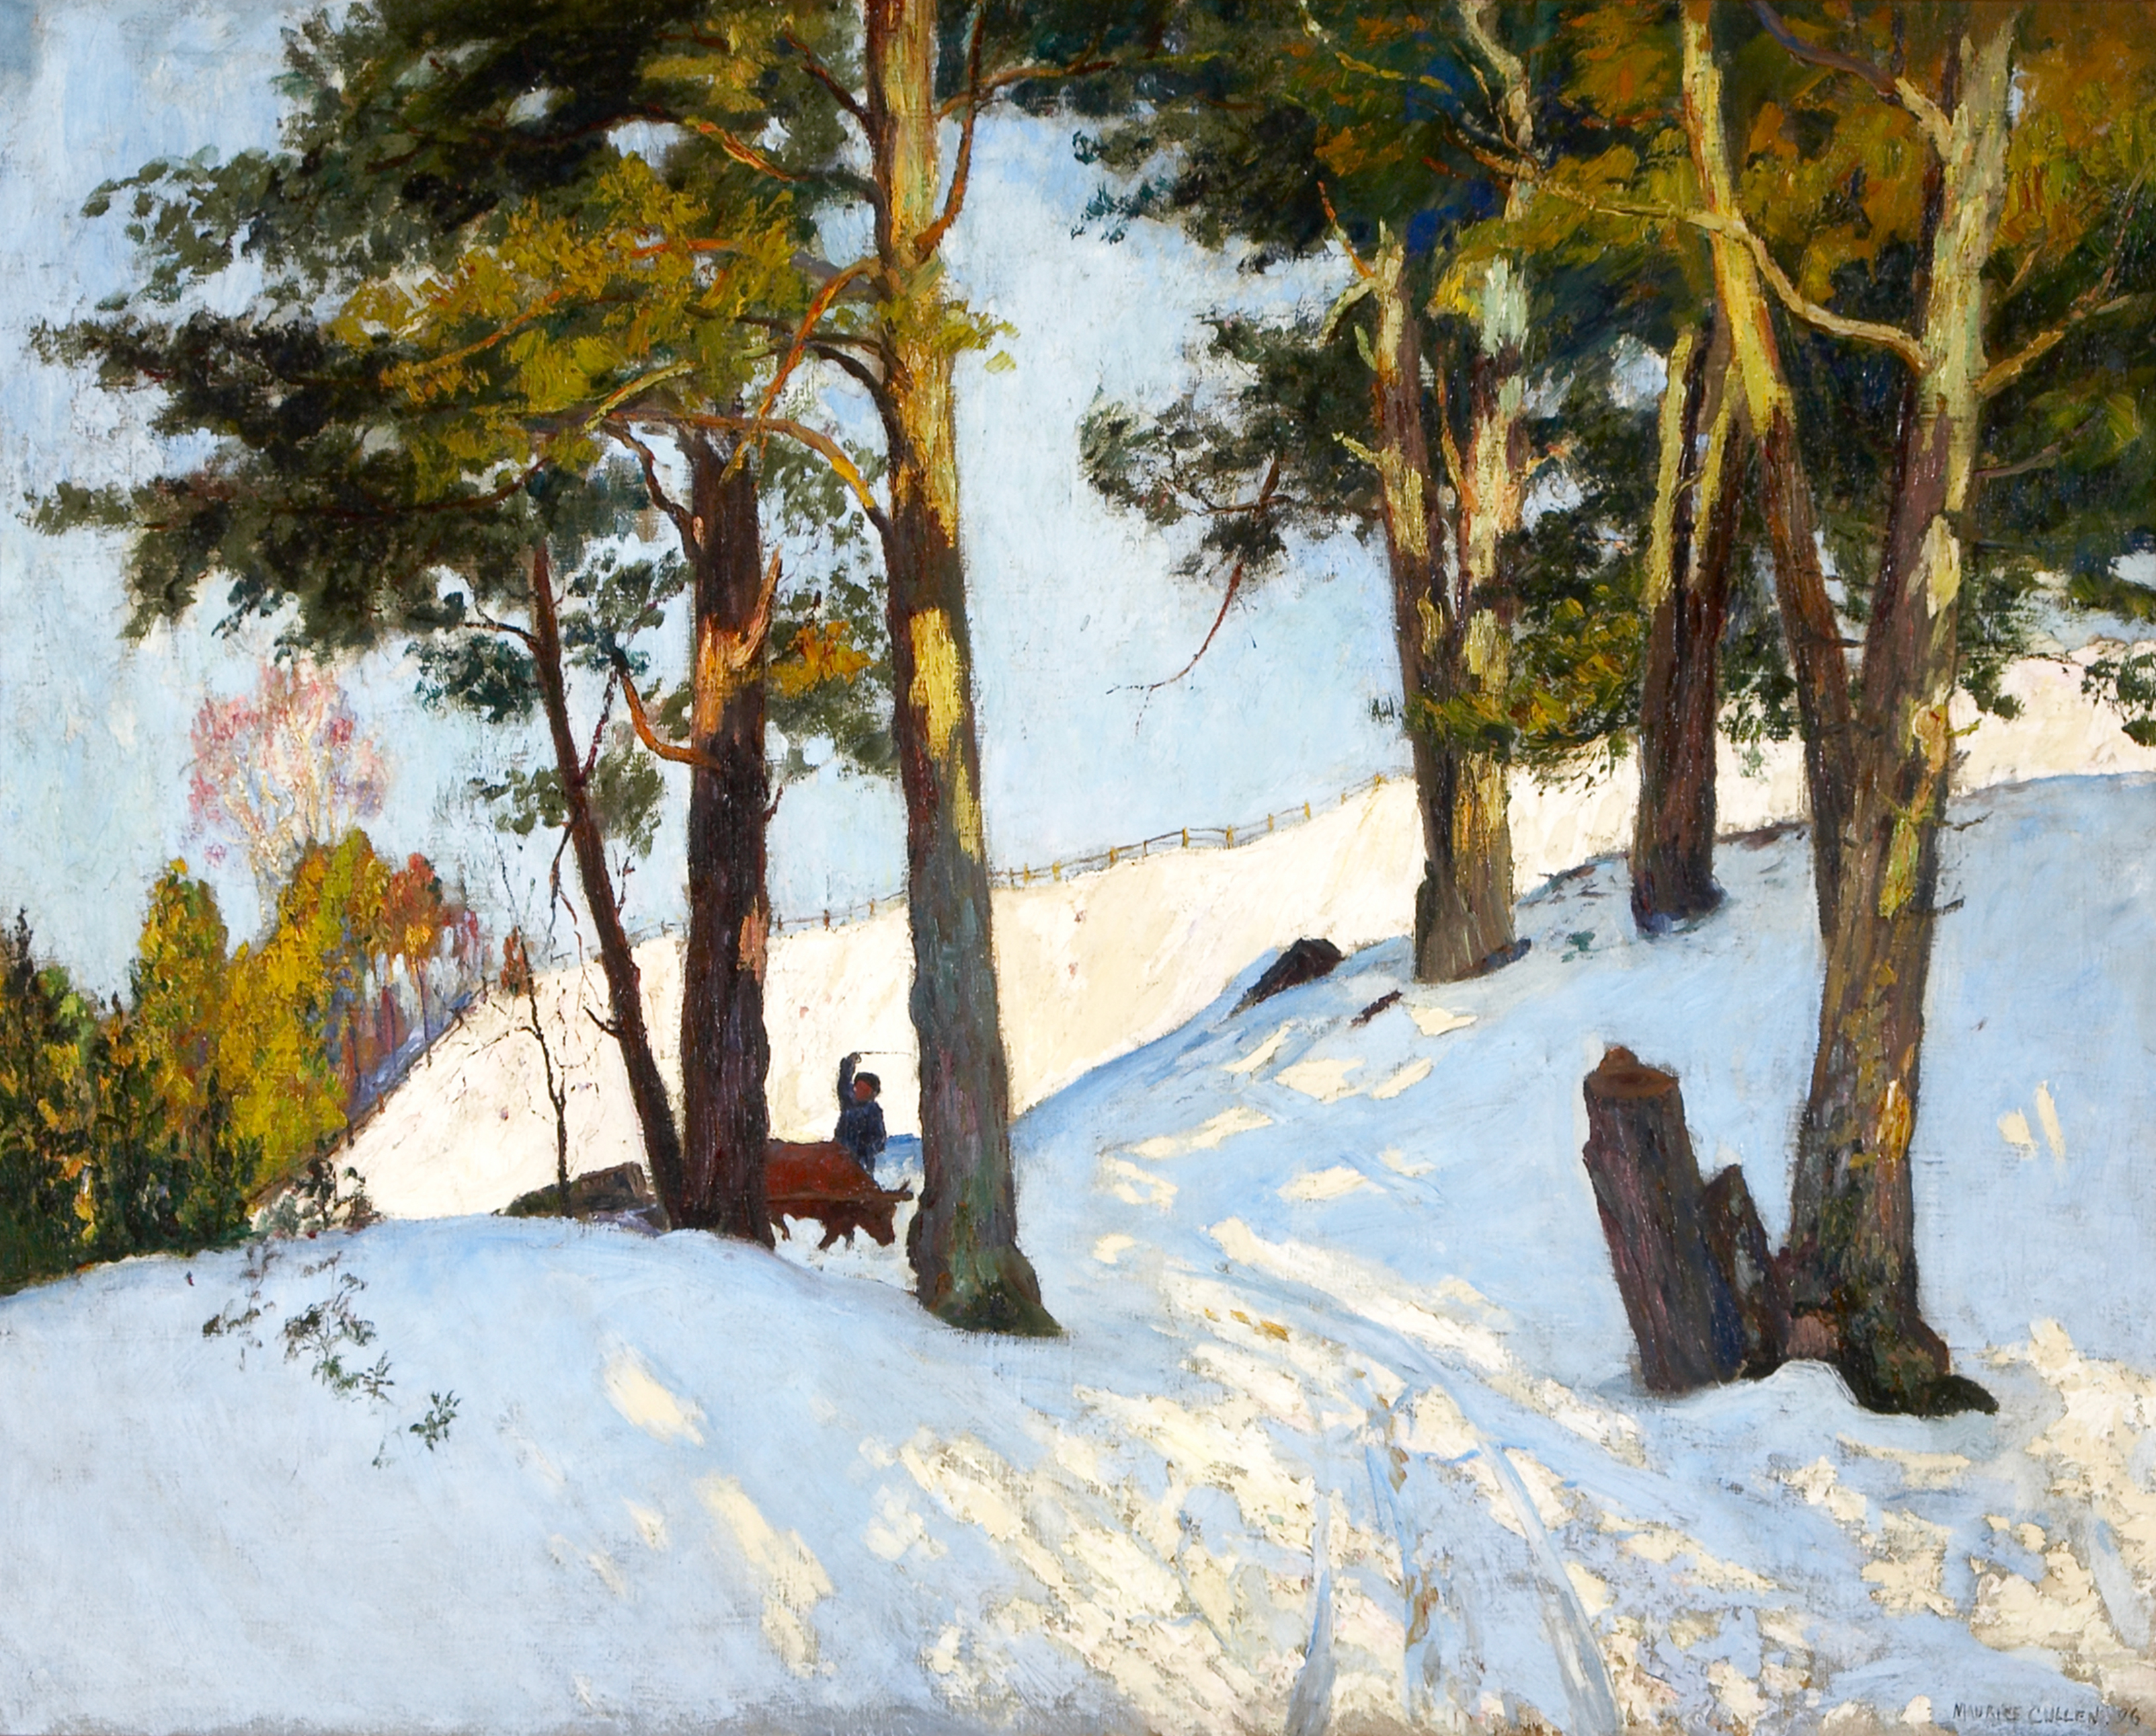  Le Canada et l’impressionnisme. Nouveaux horizons, 1880-1930 : Cullen Maurice, Logging in winter beaupre